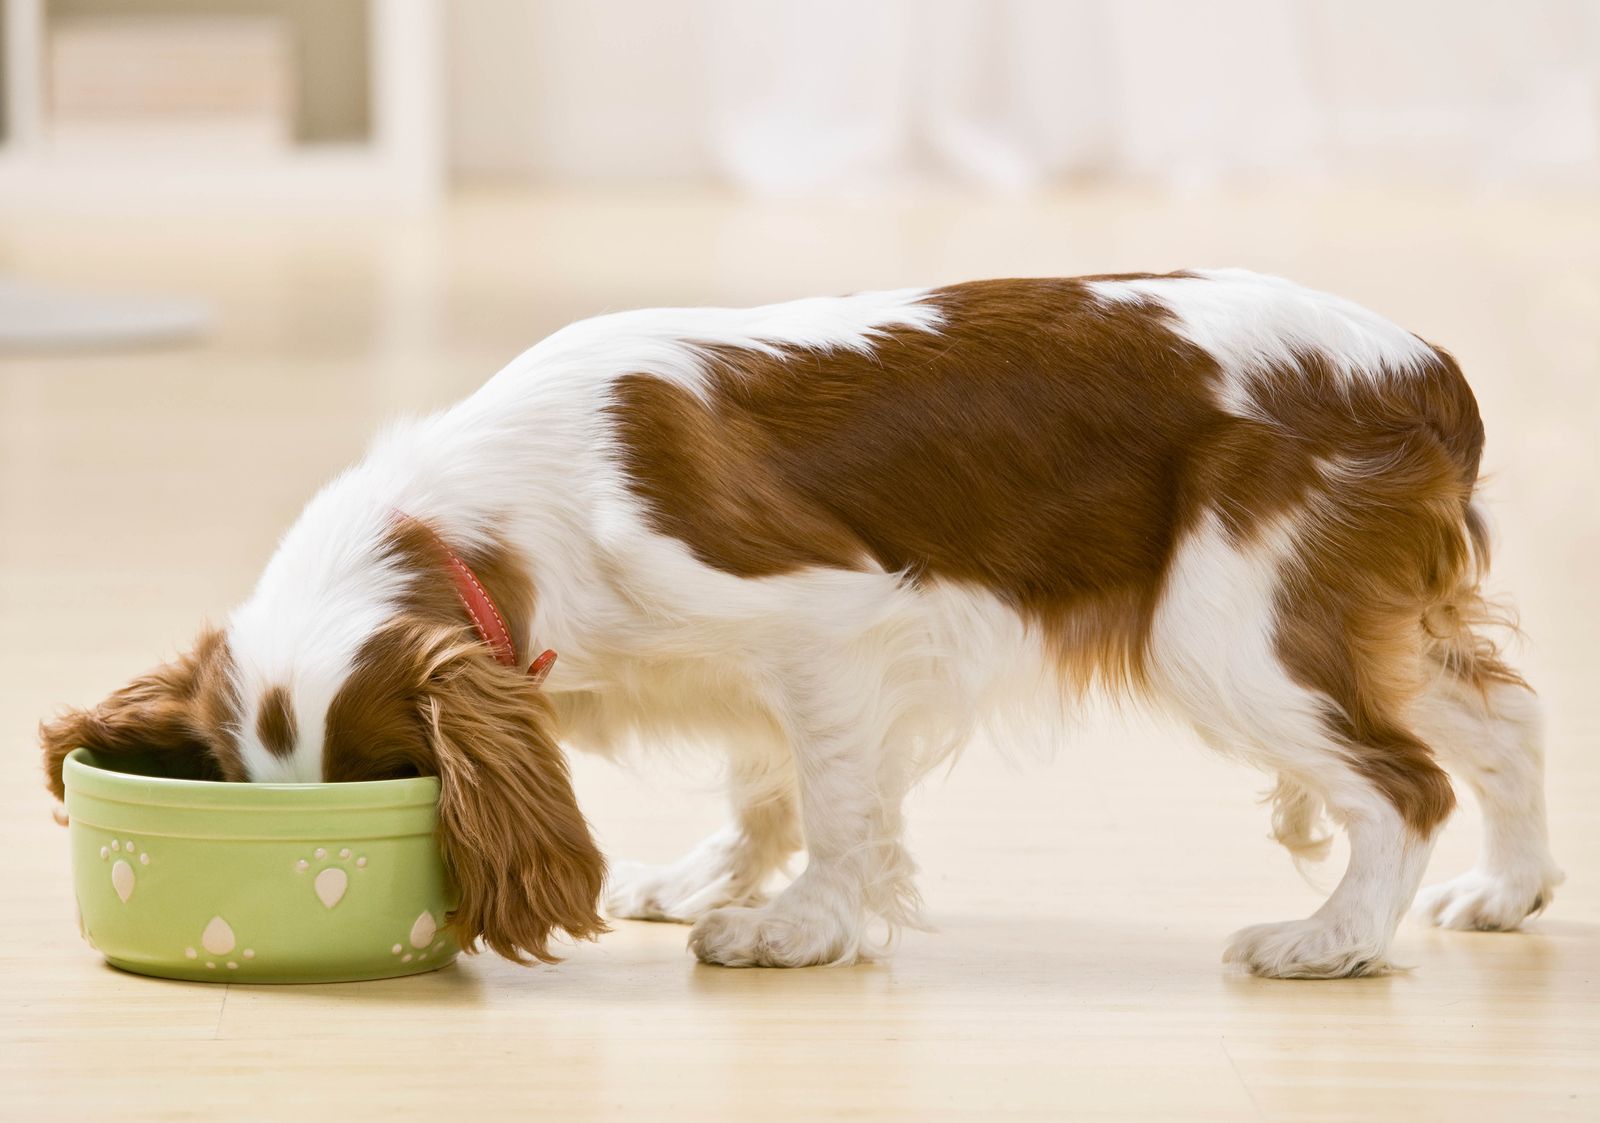 Alimentos que no debes dar a tu perro (bigstock)